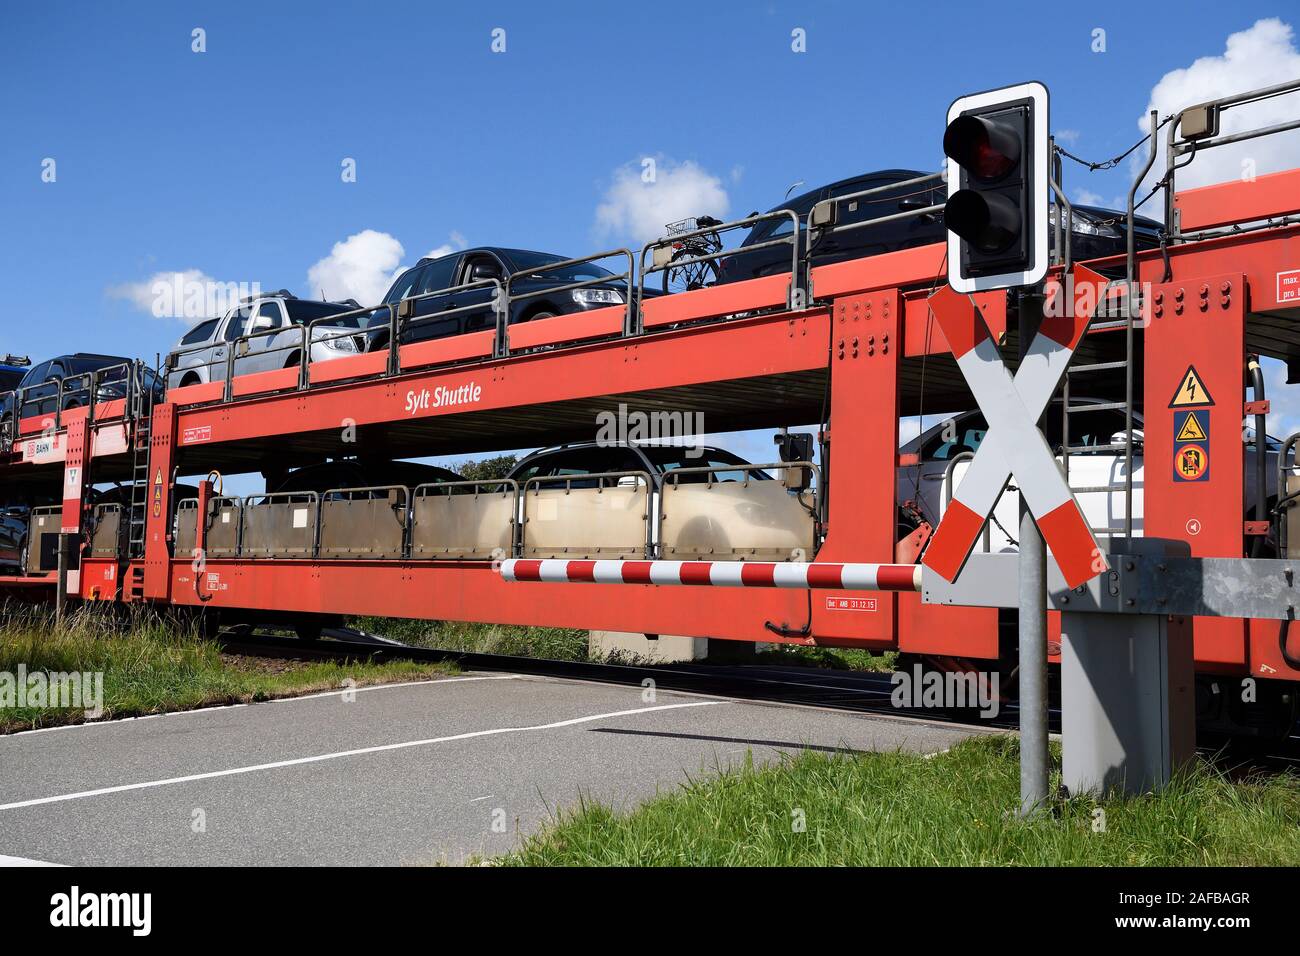 Autozug, Sylt Shuttle, Verbindung der Insel Sylt mit dem Festland, Sylt, nordfriesische Inseln, Nordfriesland, Schleswig-Holstein, Deutschland Stock Photo